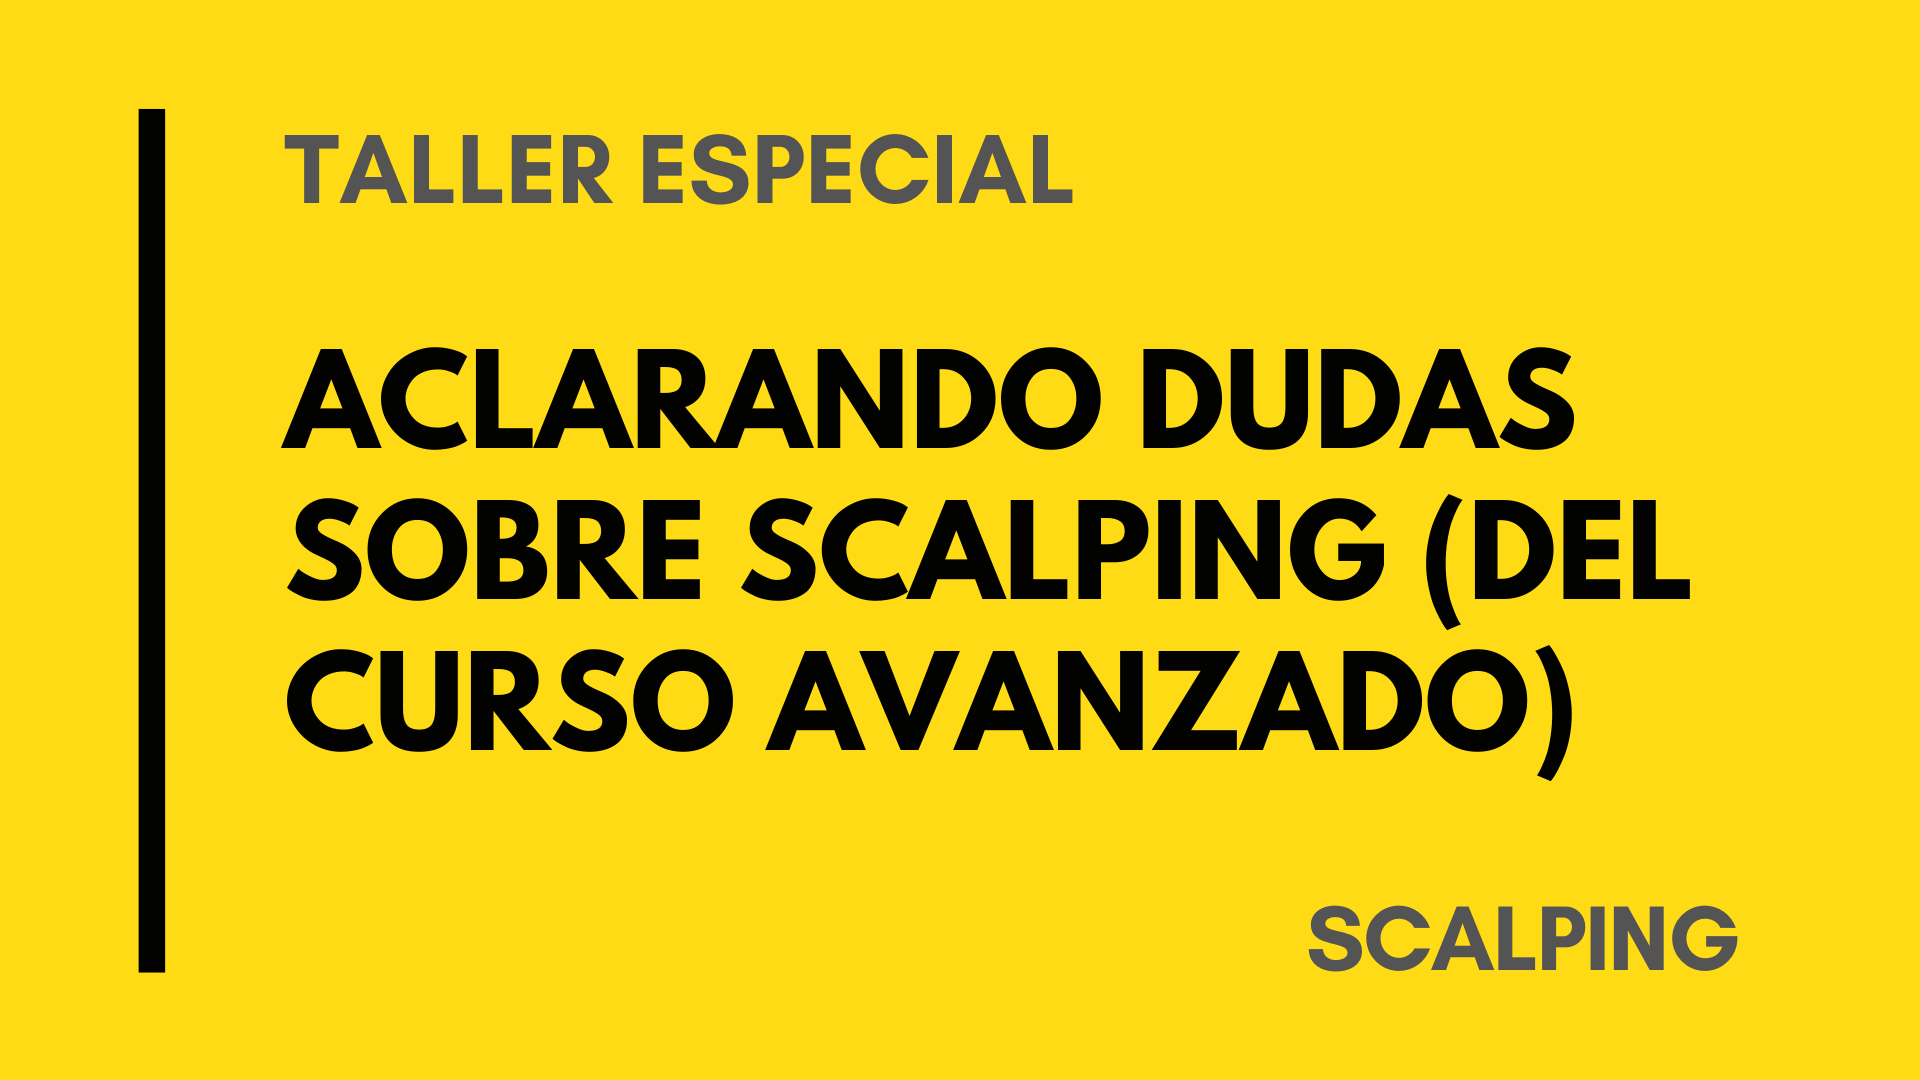 TALLER VIP – ACLARANDO DUDAS SCALPING